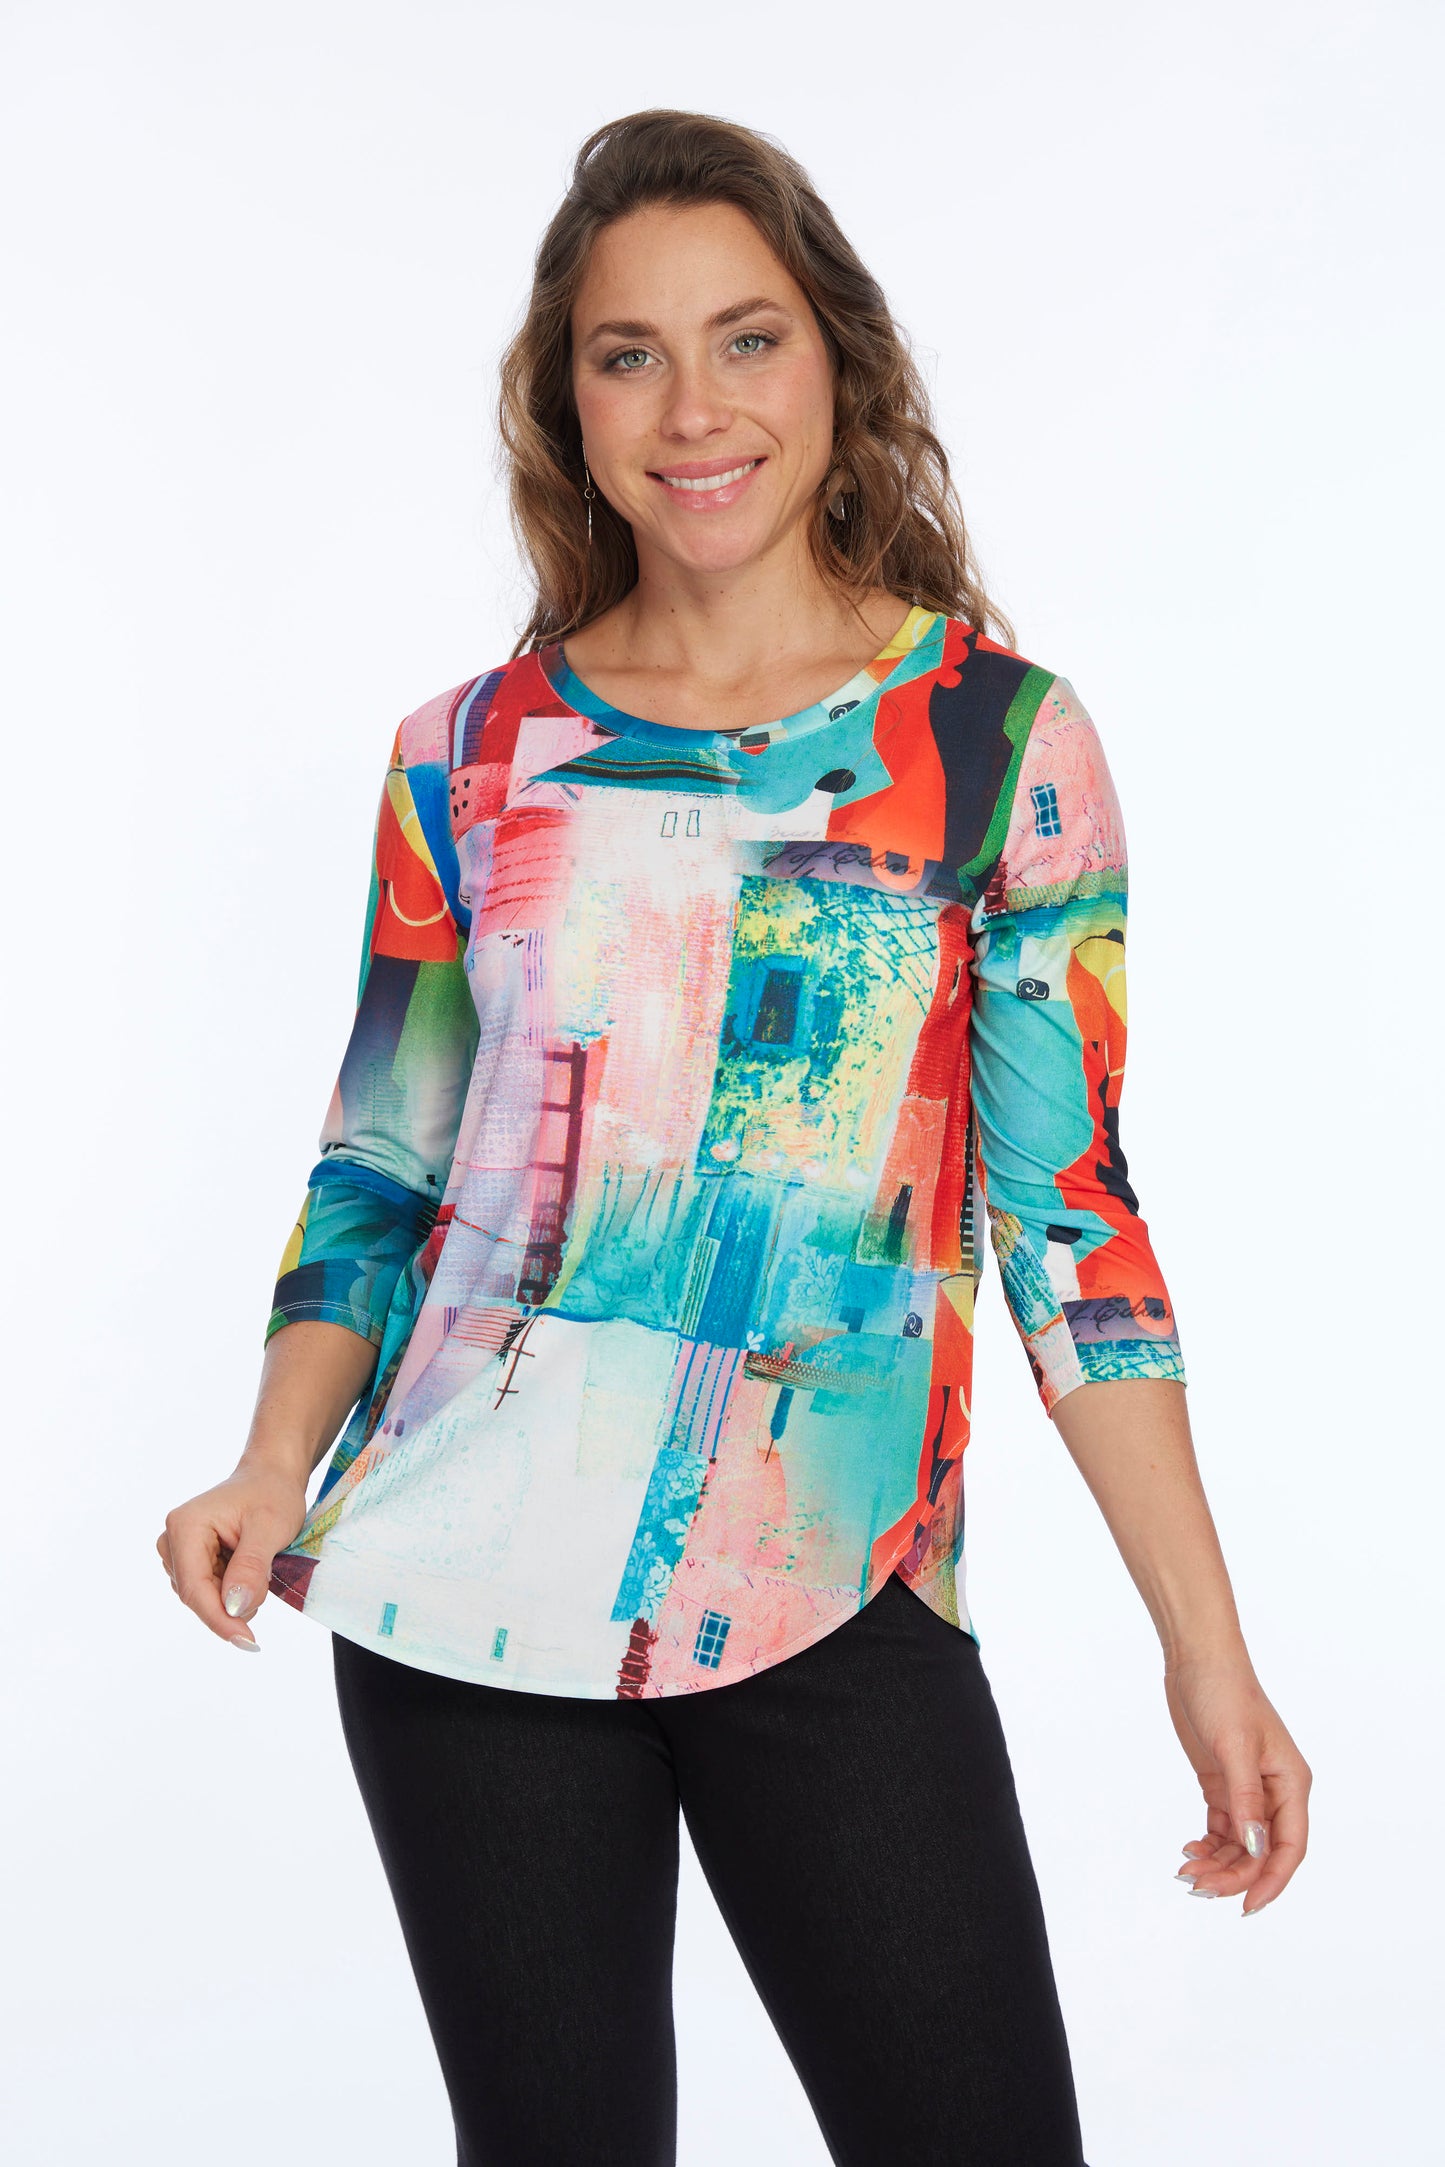 Premium Soft Knit Women's Top ZOFI Bright Color House Shape